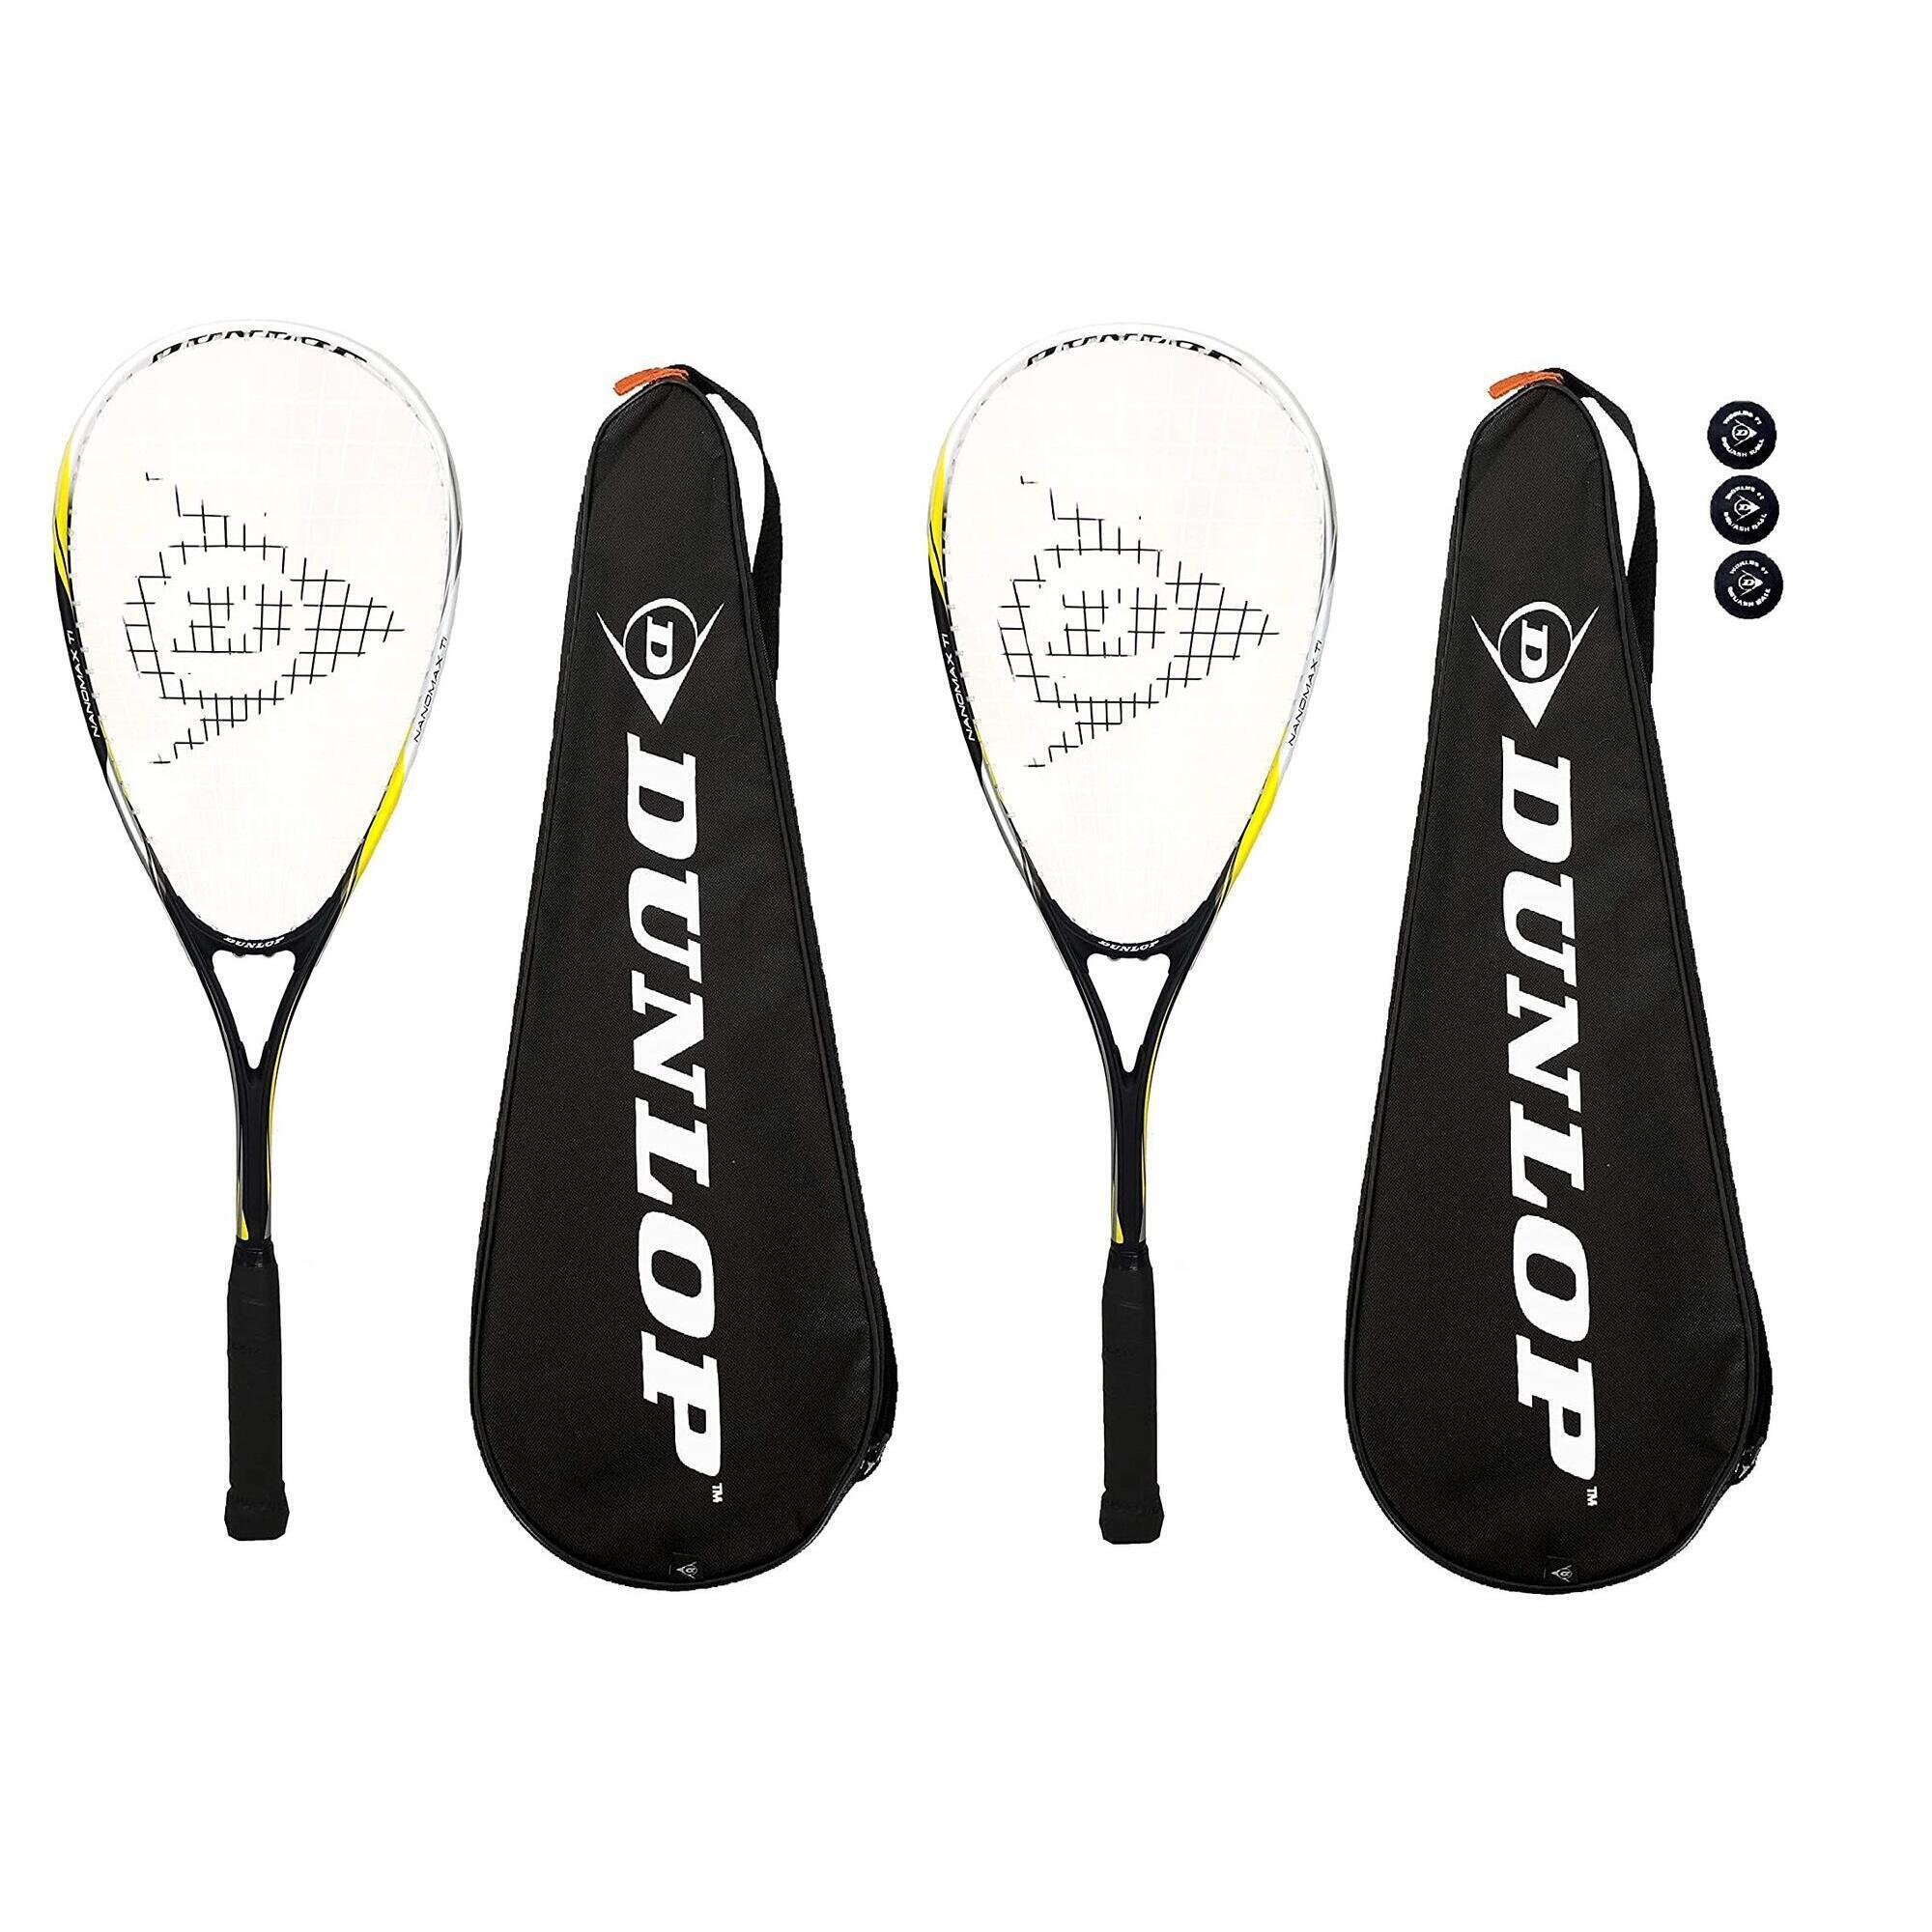 DUNLOP 2 x Dunlop Nanomax Ti Squash Rackets + Covers + 3 Squash Balls